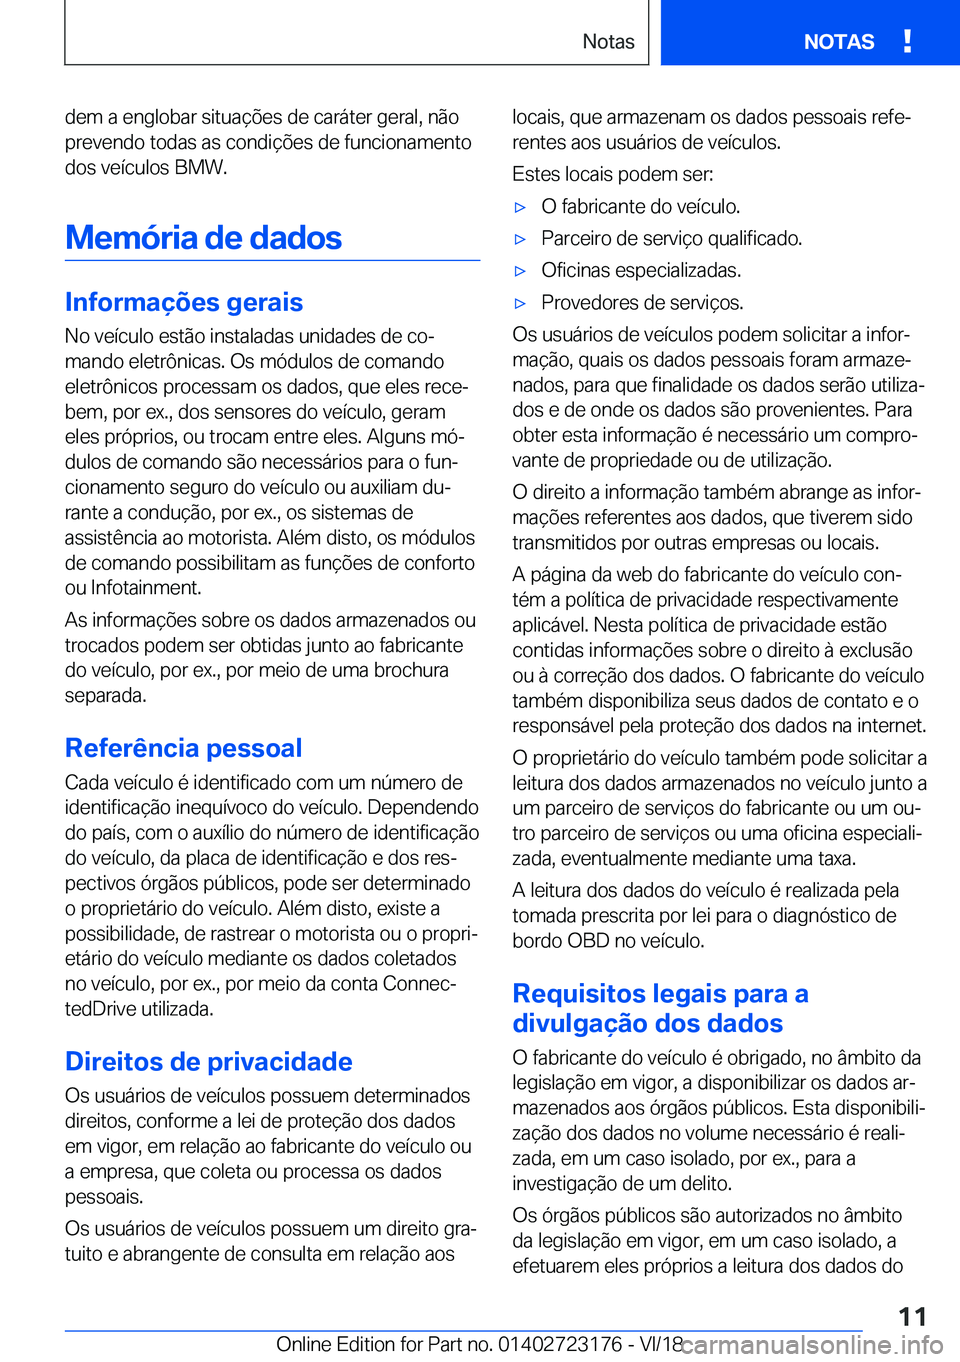 BMW 4 SERIES GRAN COUPE 2019  Manual do condutor (in Portuguese) �d�e�m��a��e�n�g�l�o�b�a�r��s�i�t�u�a�